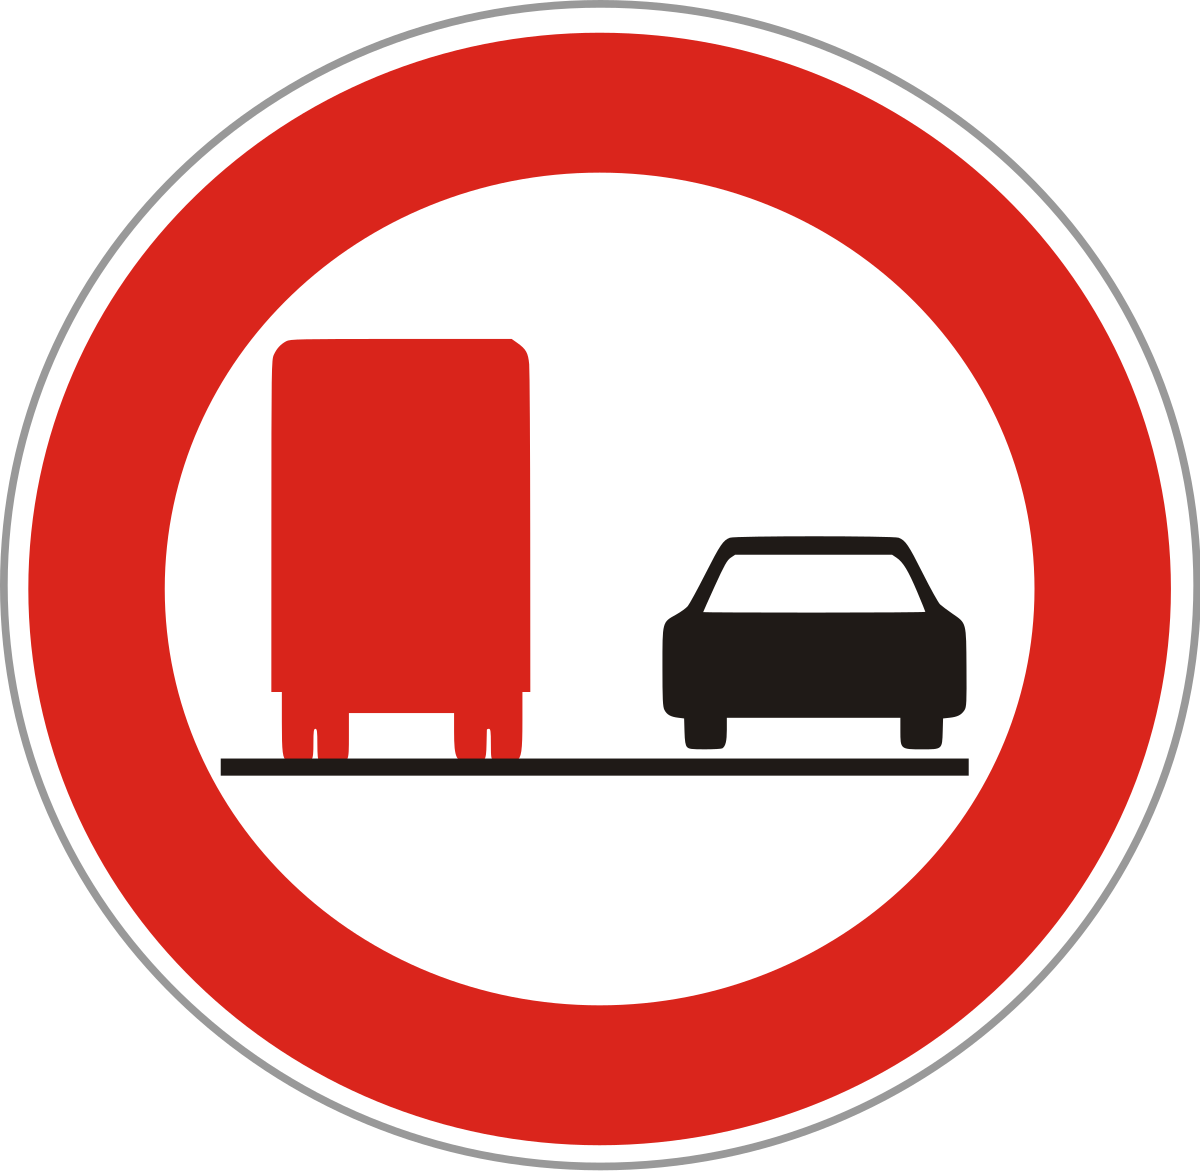 Обгон грузовым автомобилем запрещен. Дорожный знак обгон разрешен. Запрещающие знаки обгон запрещен. Дорожный знак обгон запрещен картинка. Запрещающие знаки для грузовиков.